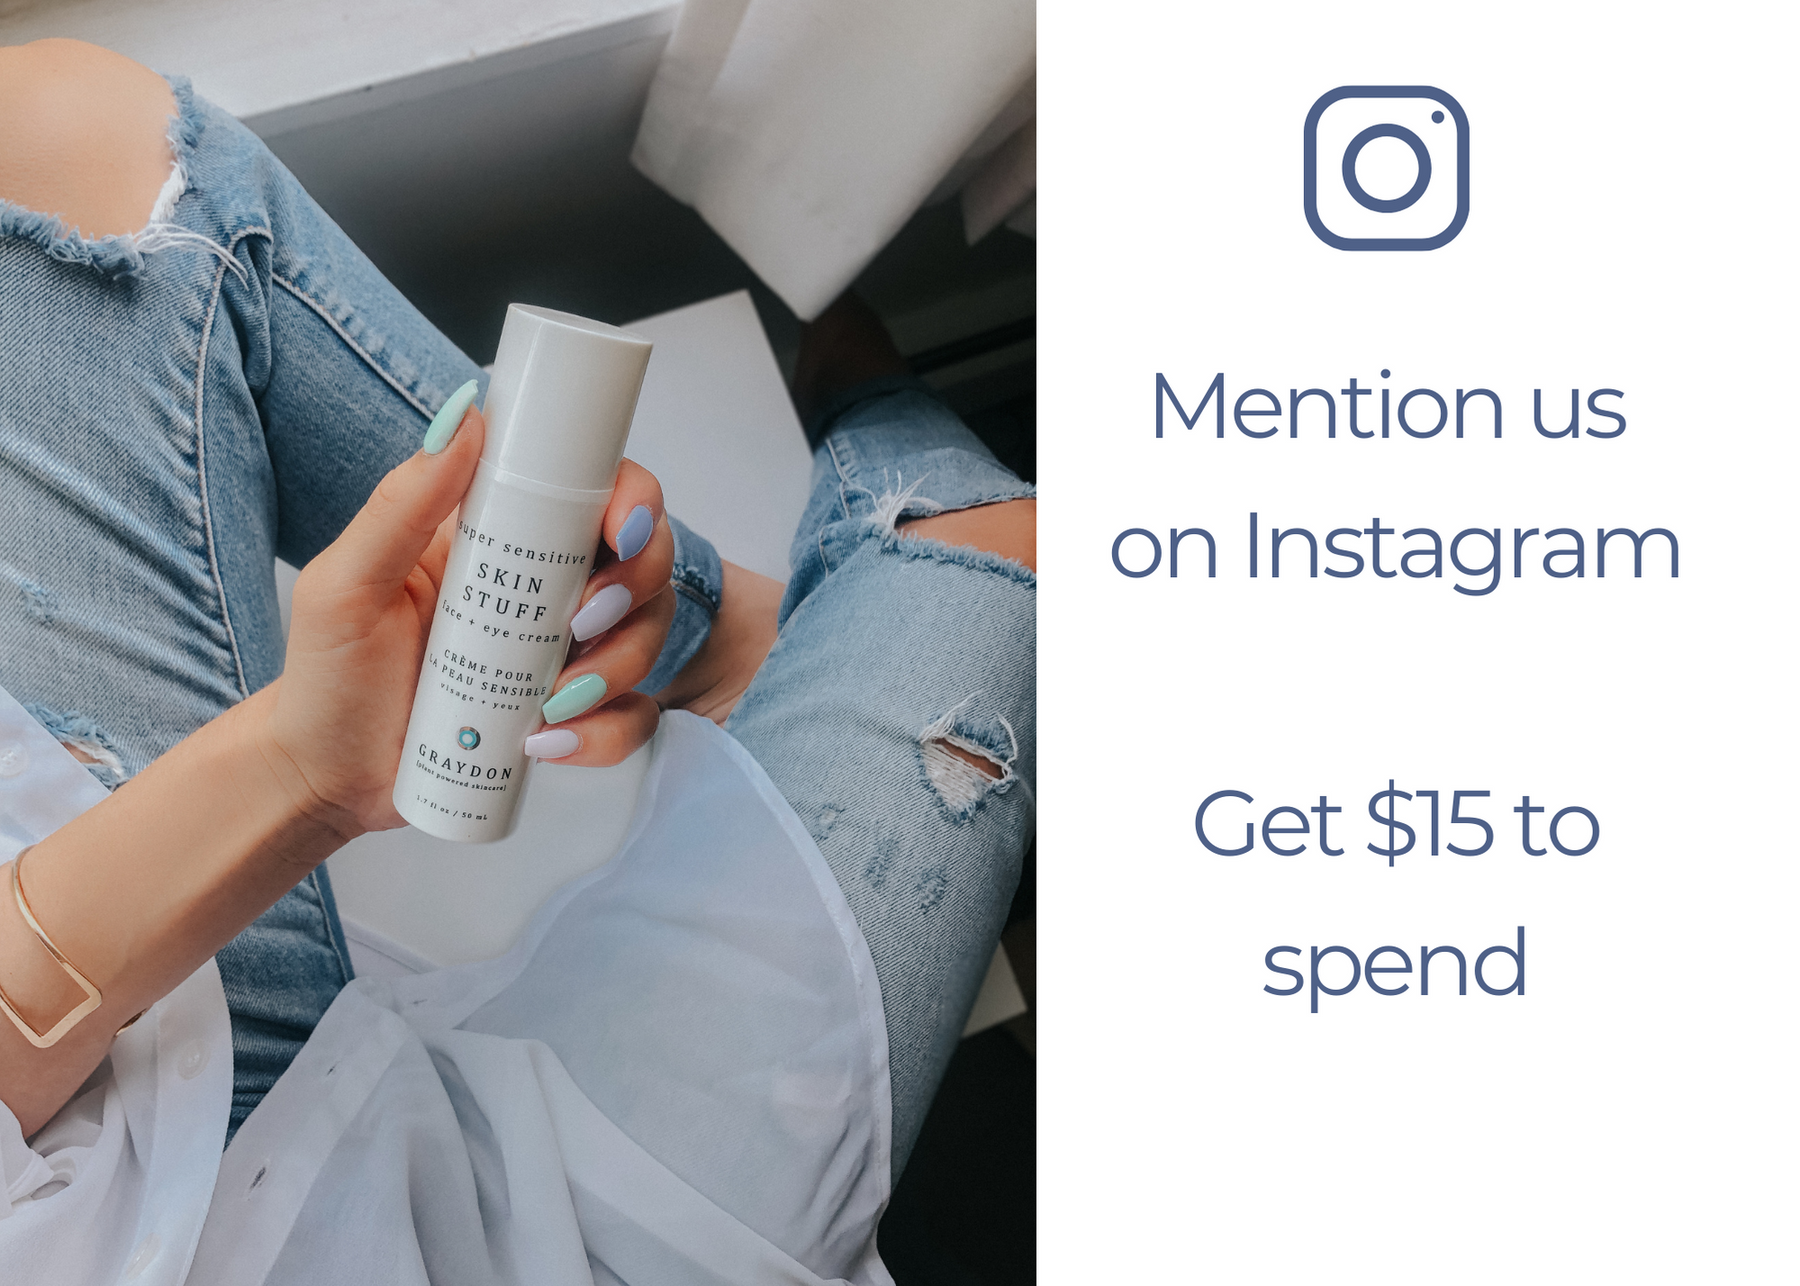 Share Graydon Skincare on Instagram. Get $15 Back